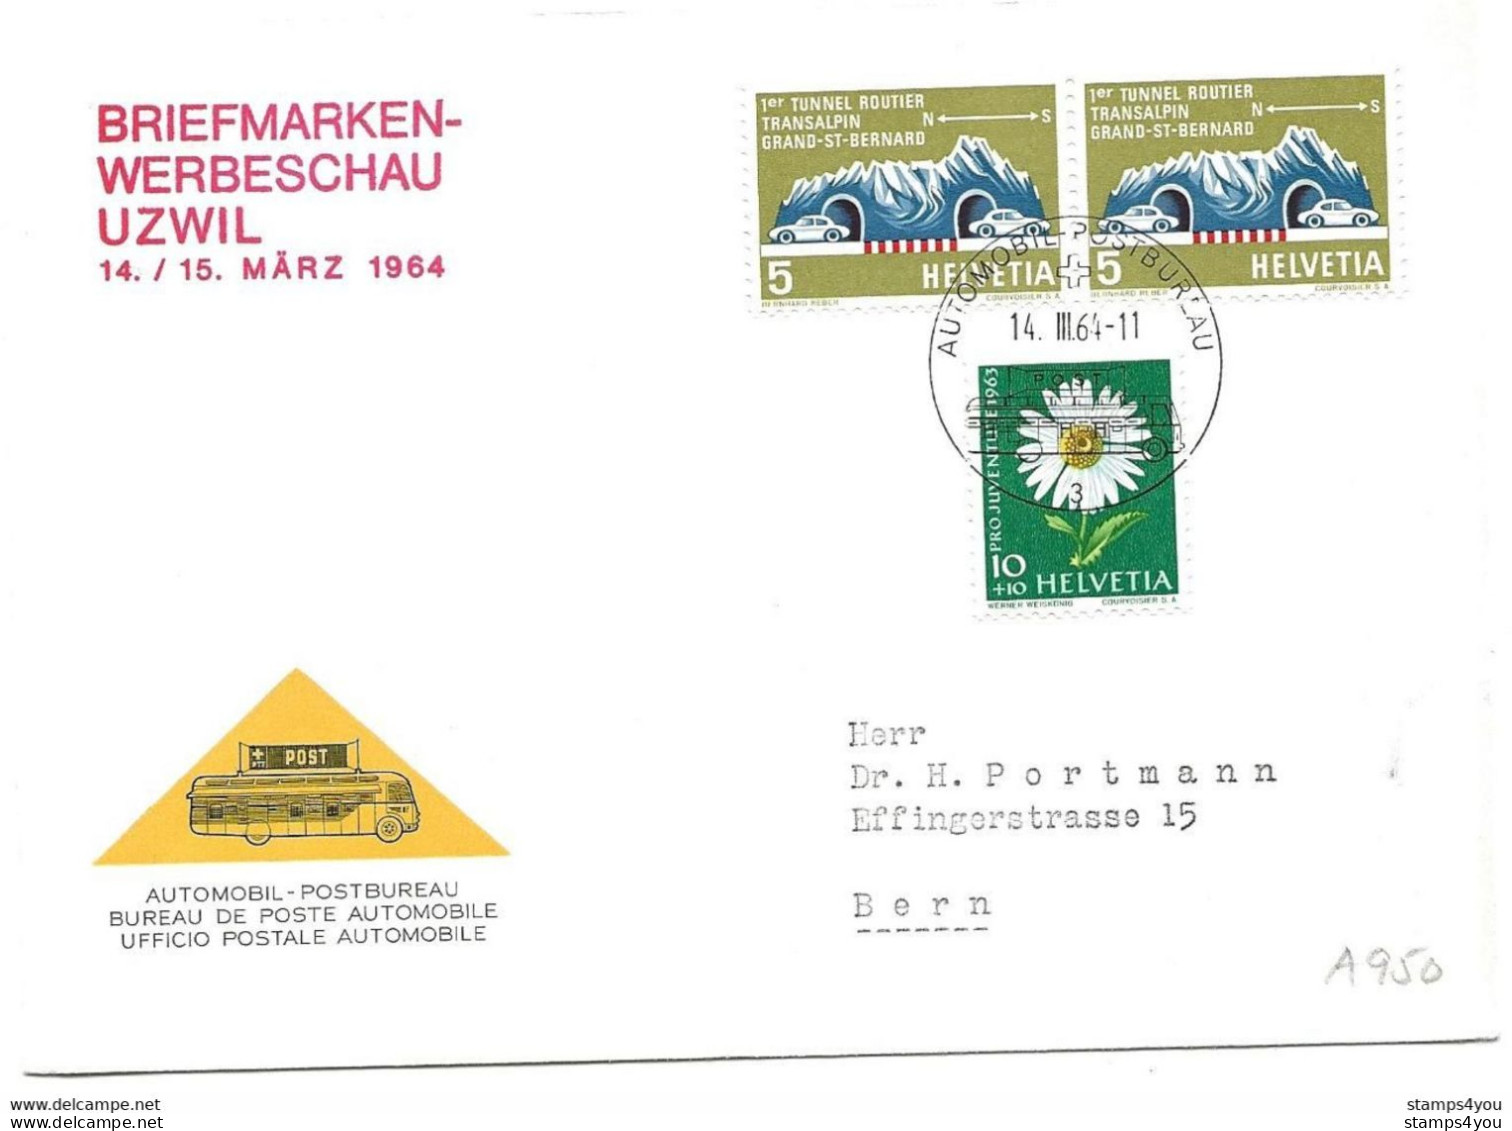 270 - 16 - Enveloppe Avec Oblit Spéciale "Briefmarken Werbeschau Uzwil 1964" - Poststempel